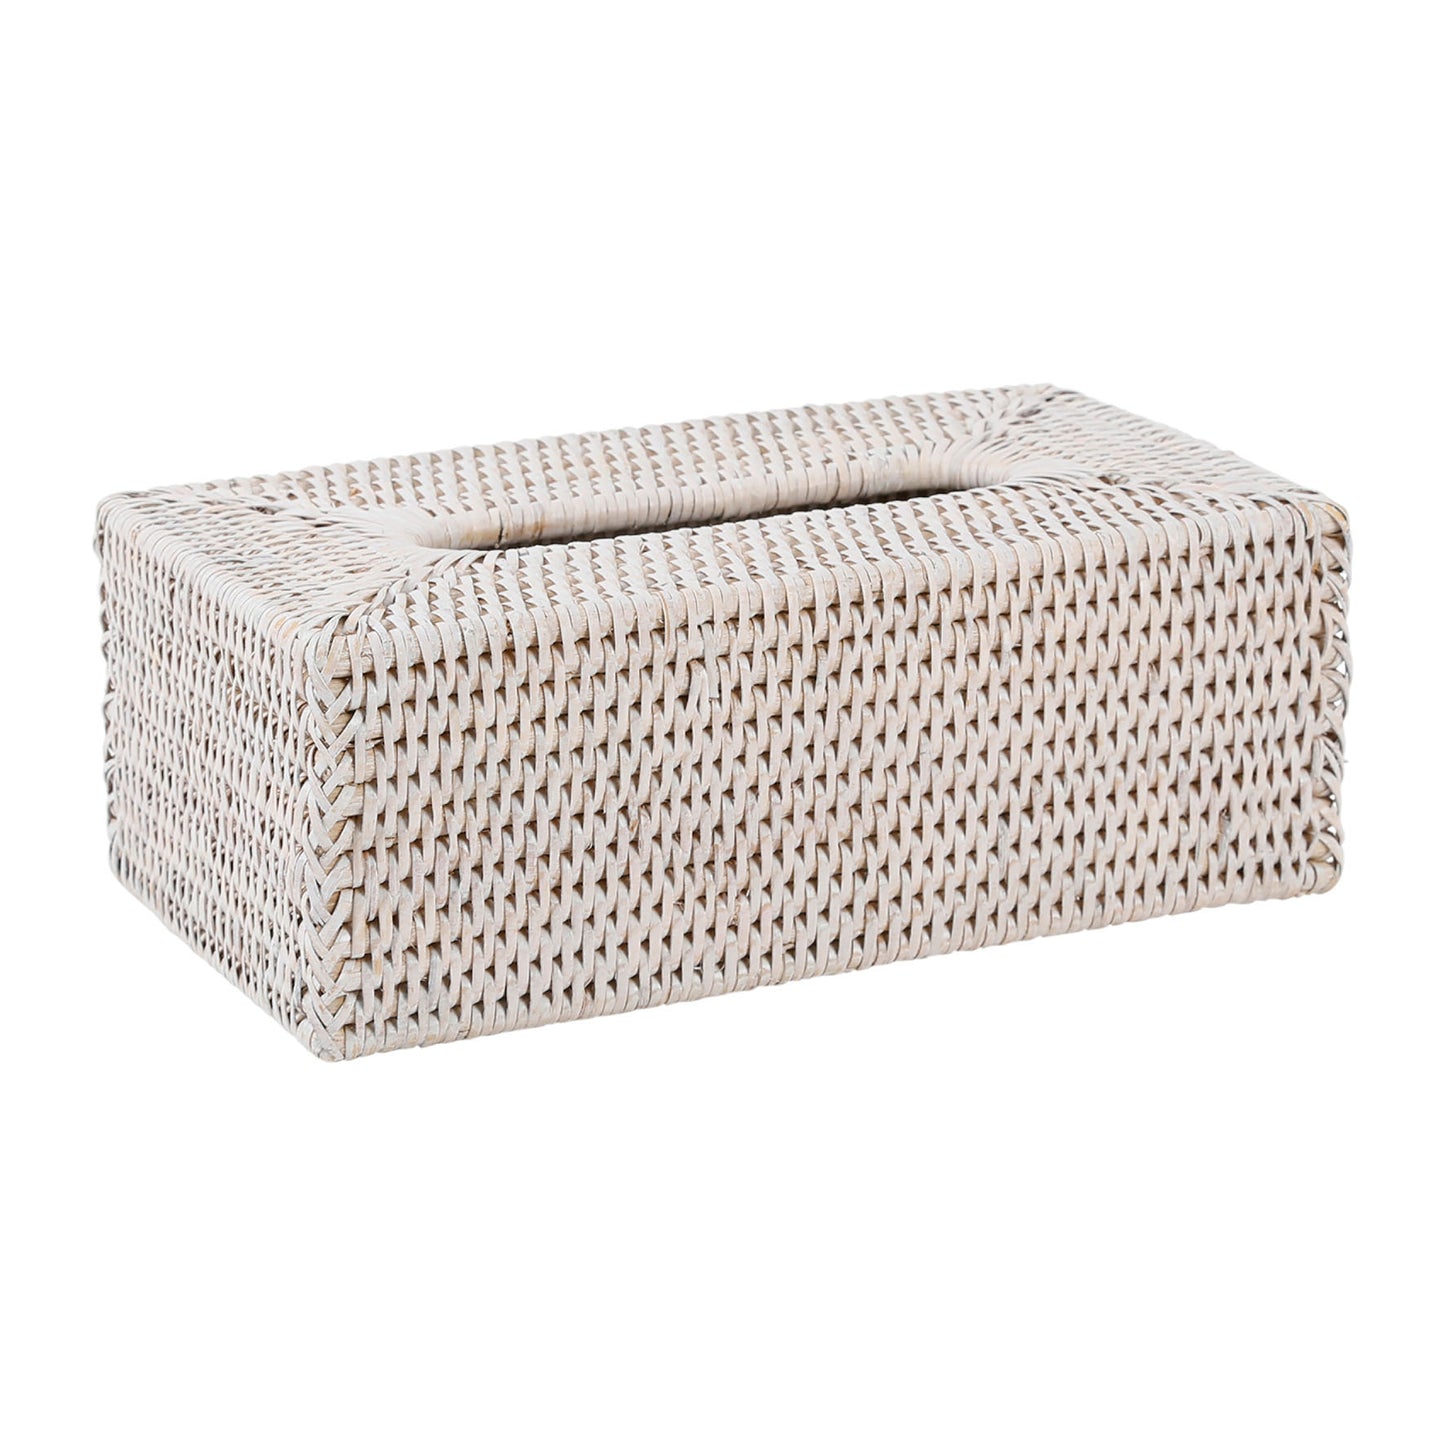 White rattan tissue box